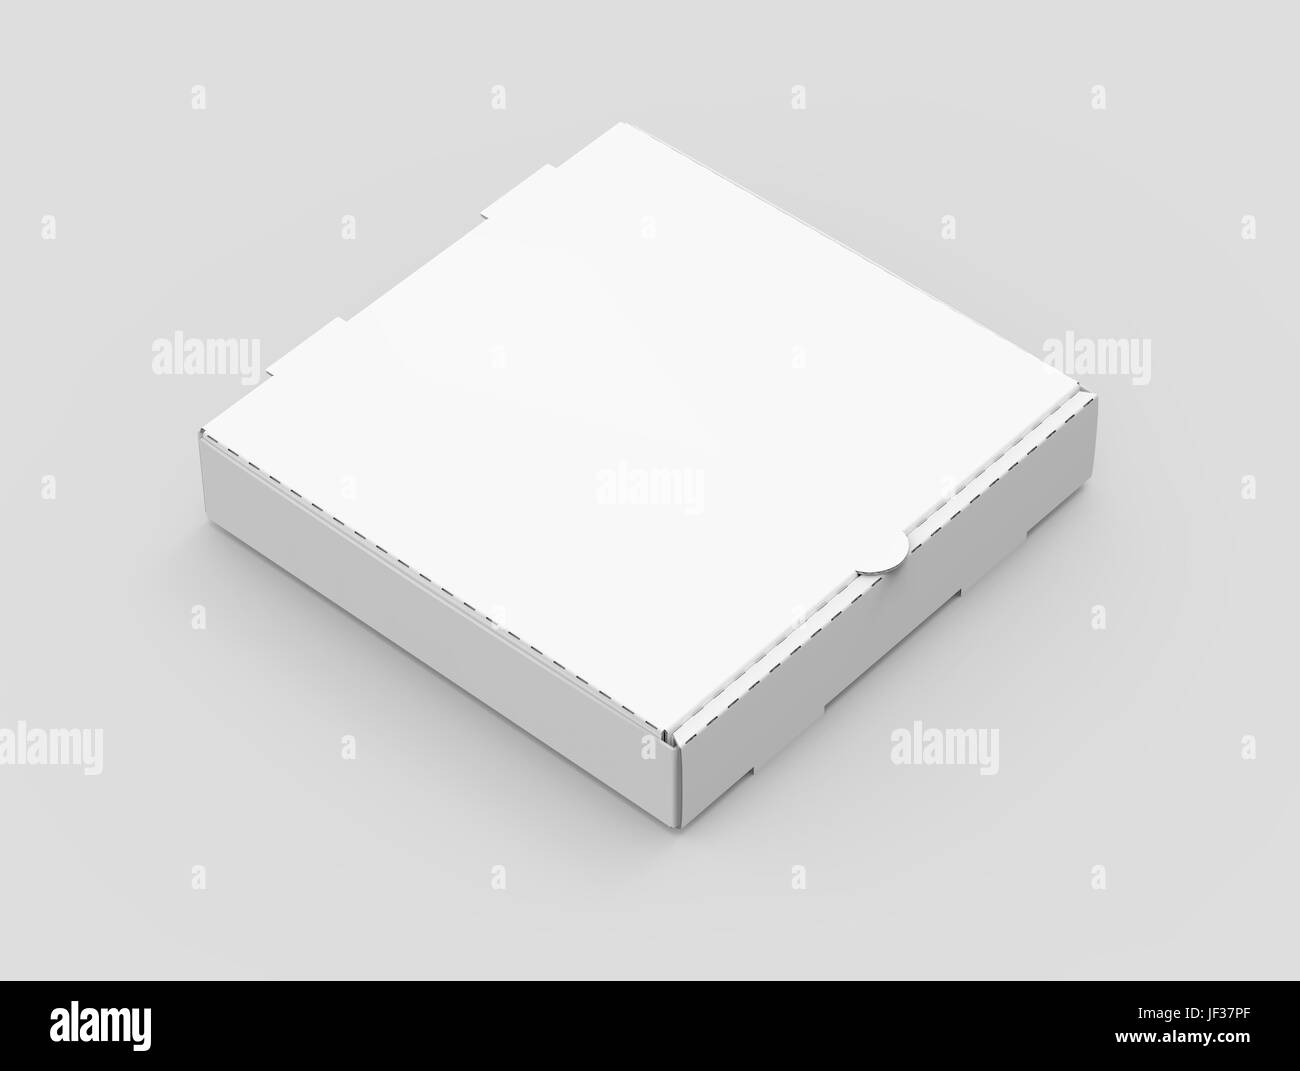 Le rendu 3d'inclinaison droite blanc vide boîte à pizza fermé, isolé fond gris clair elevated view Banque D'Images